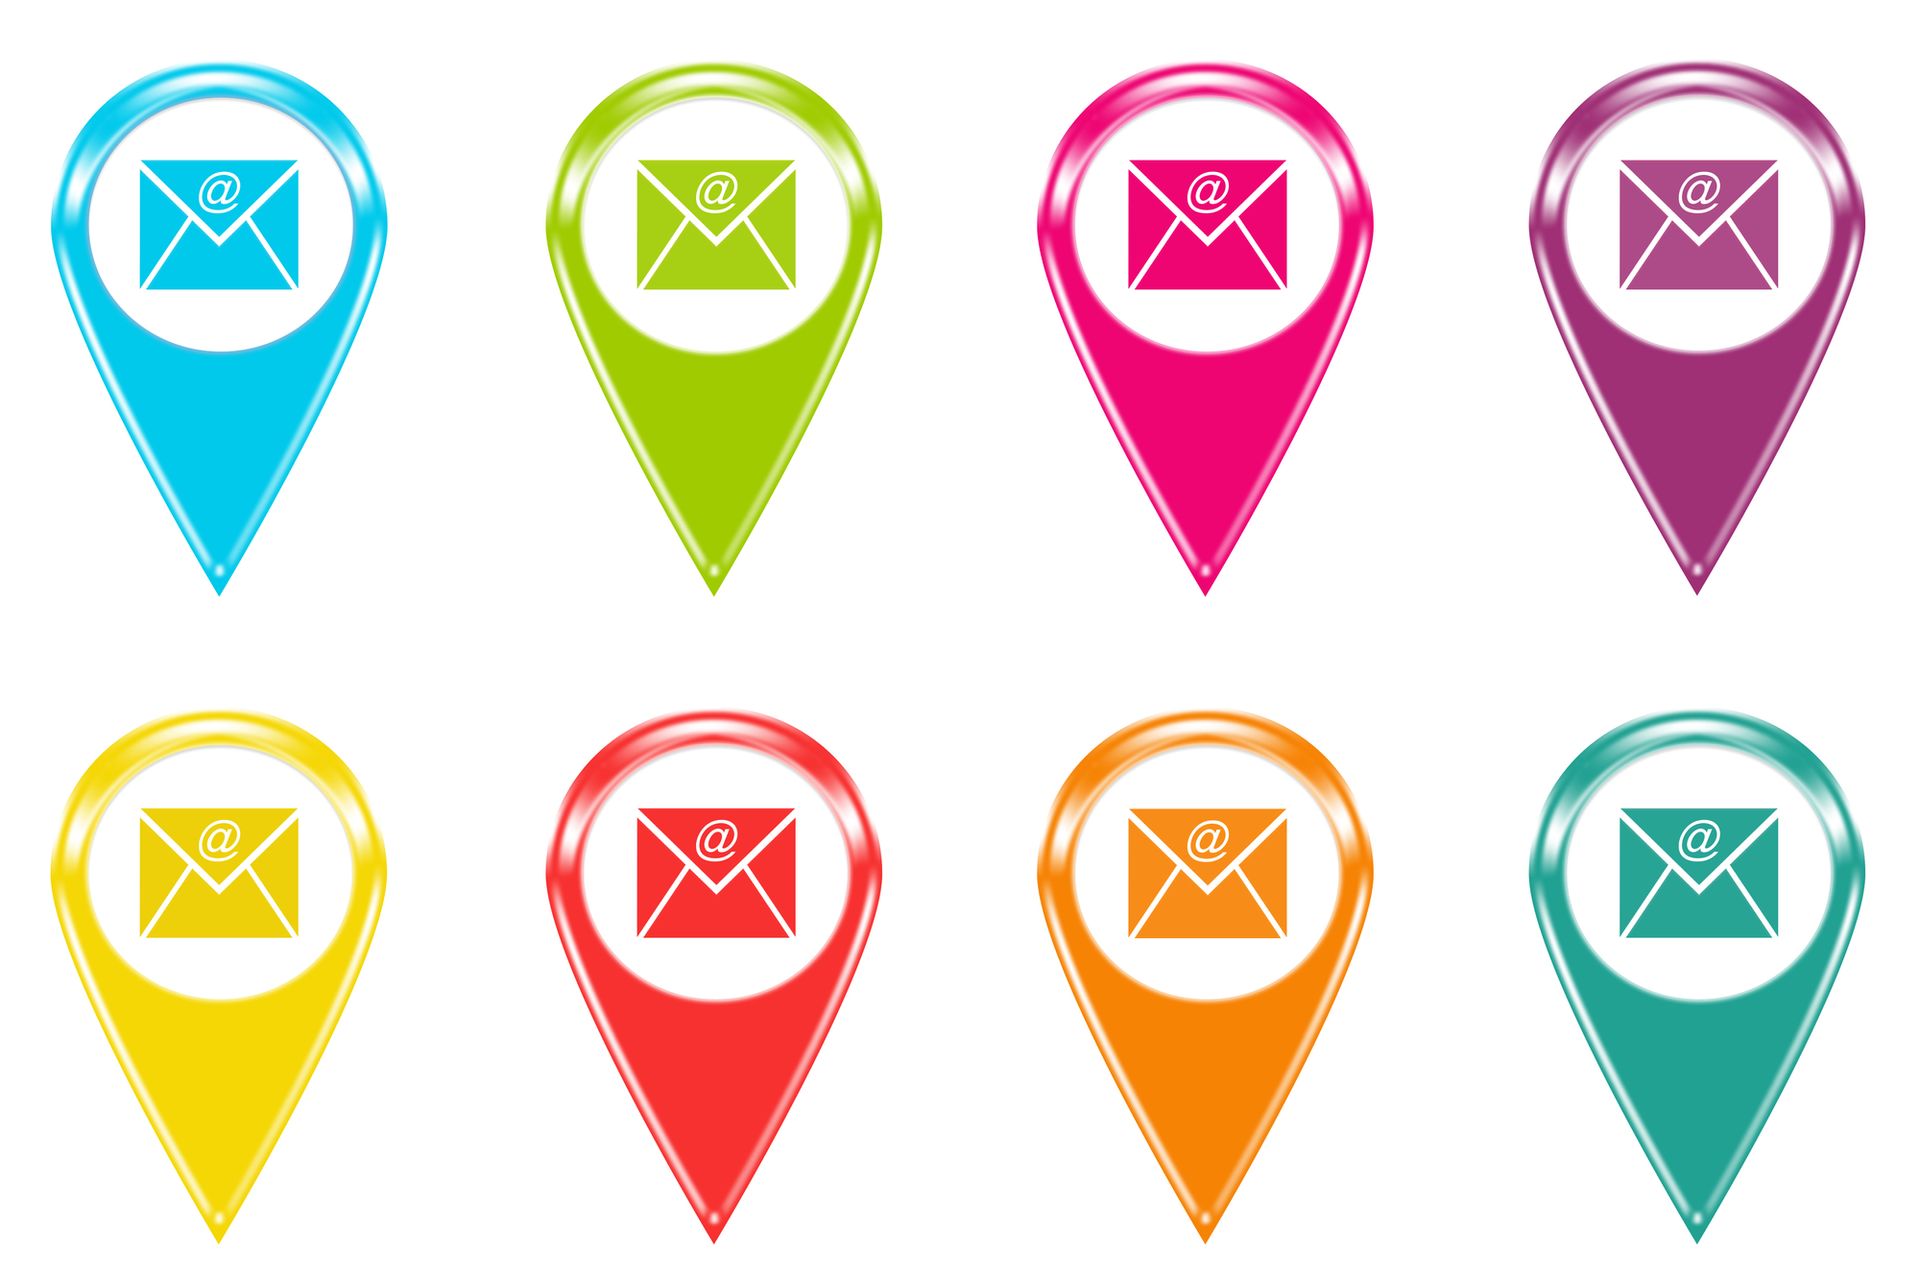 Illustratie van acht e-mail-icoontjes in verschillende kleuren ter illustratie van een blogpost over betere nieuwsbrieven sturen.